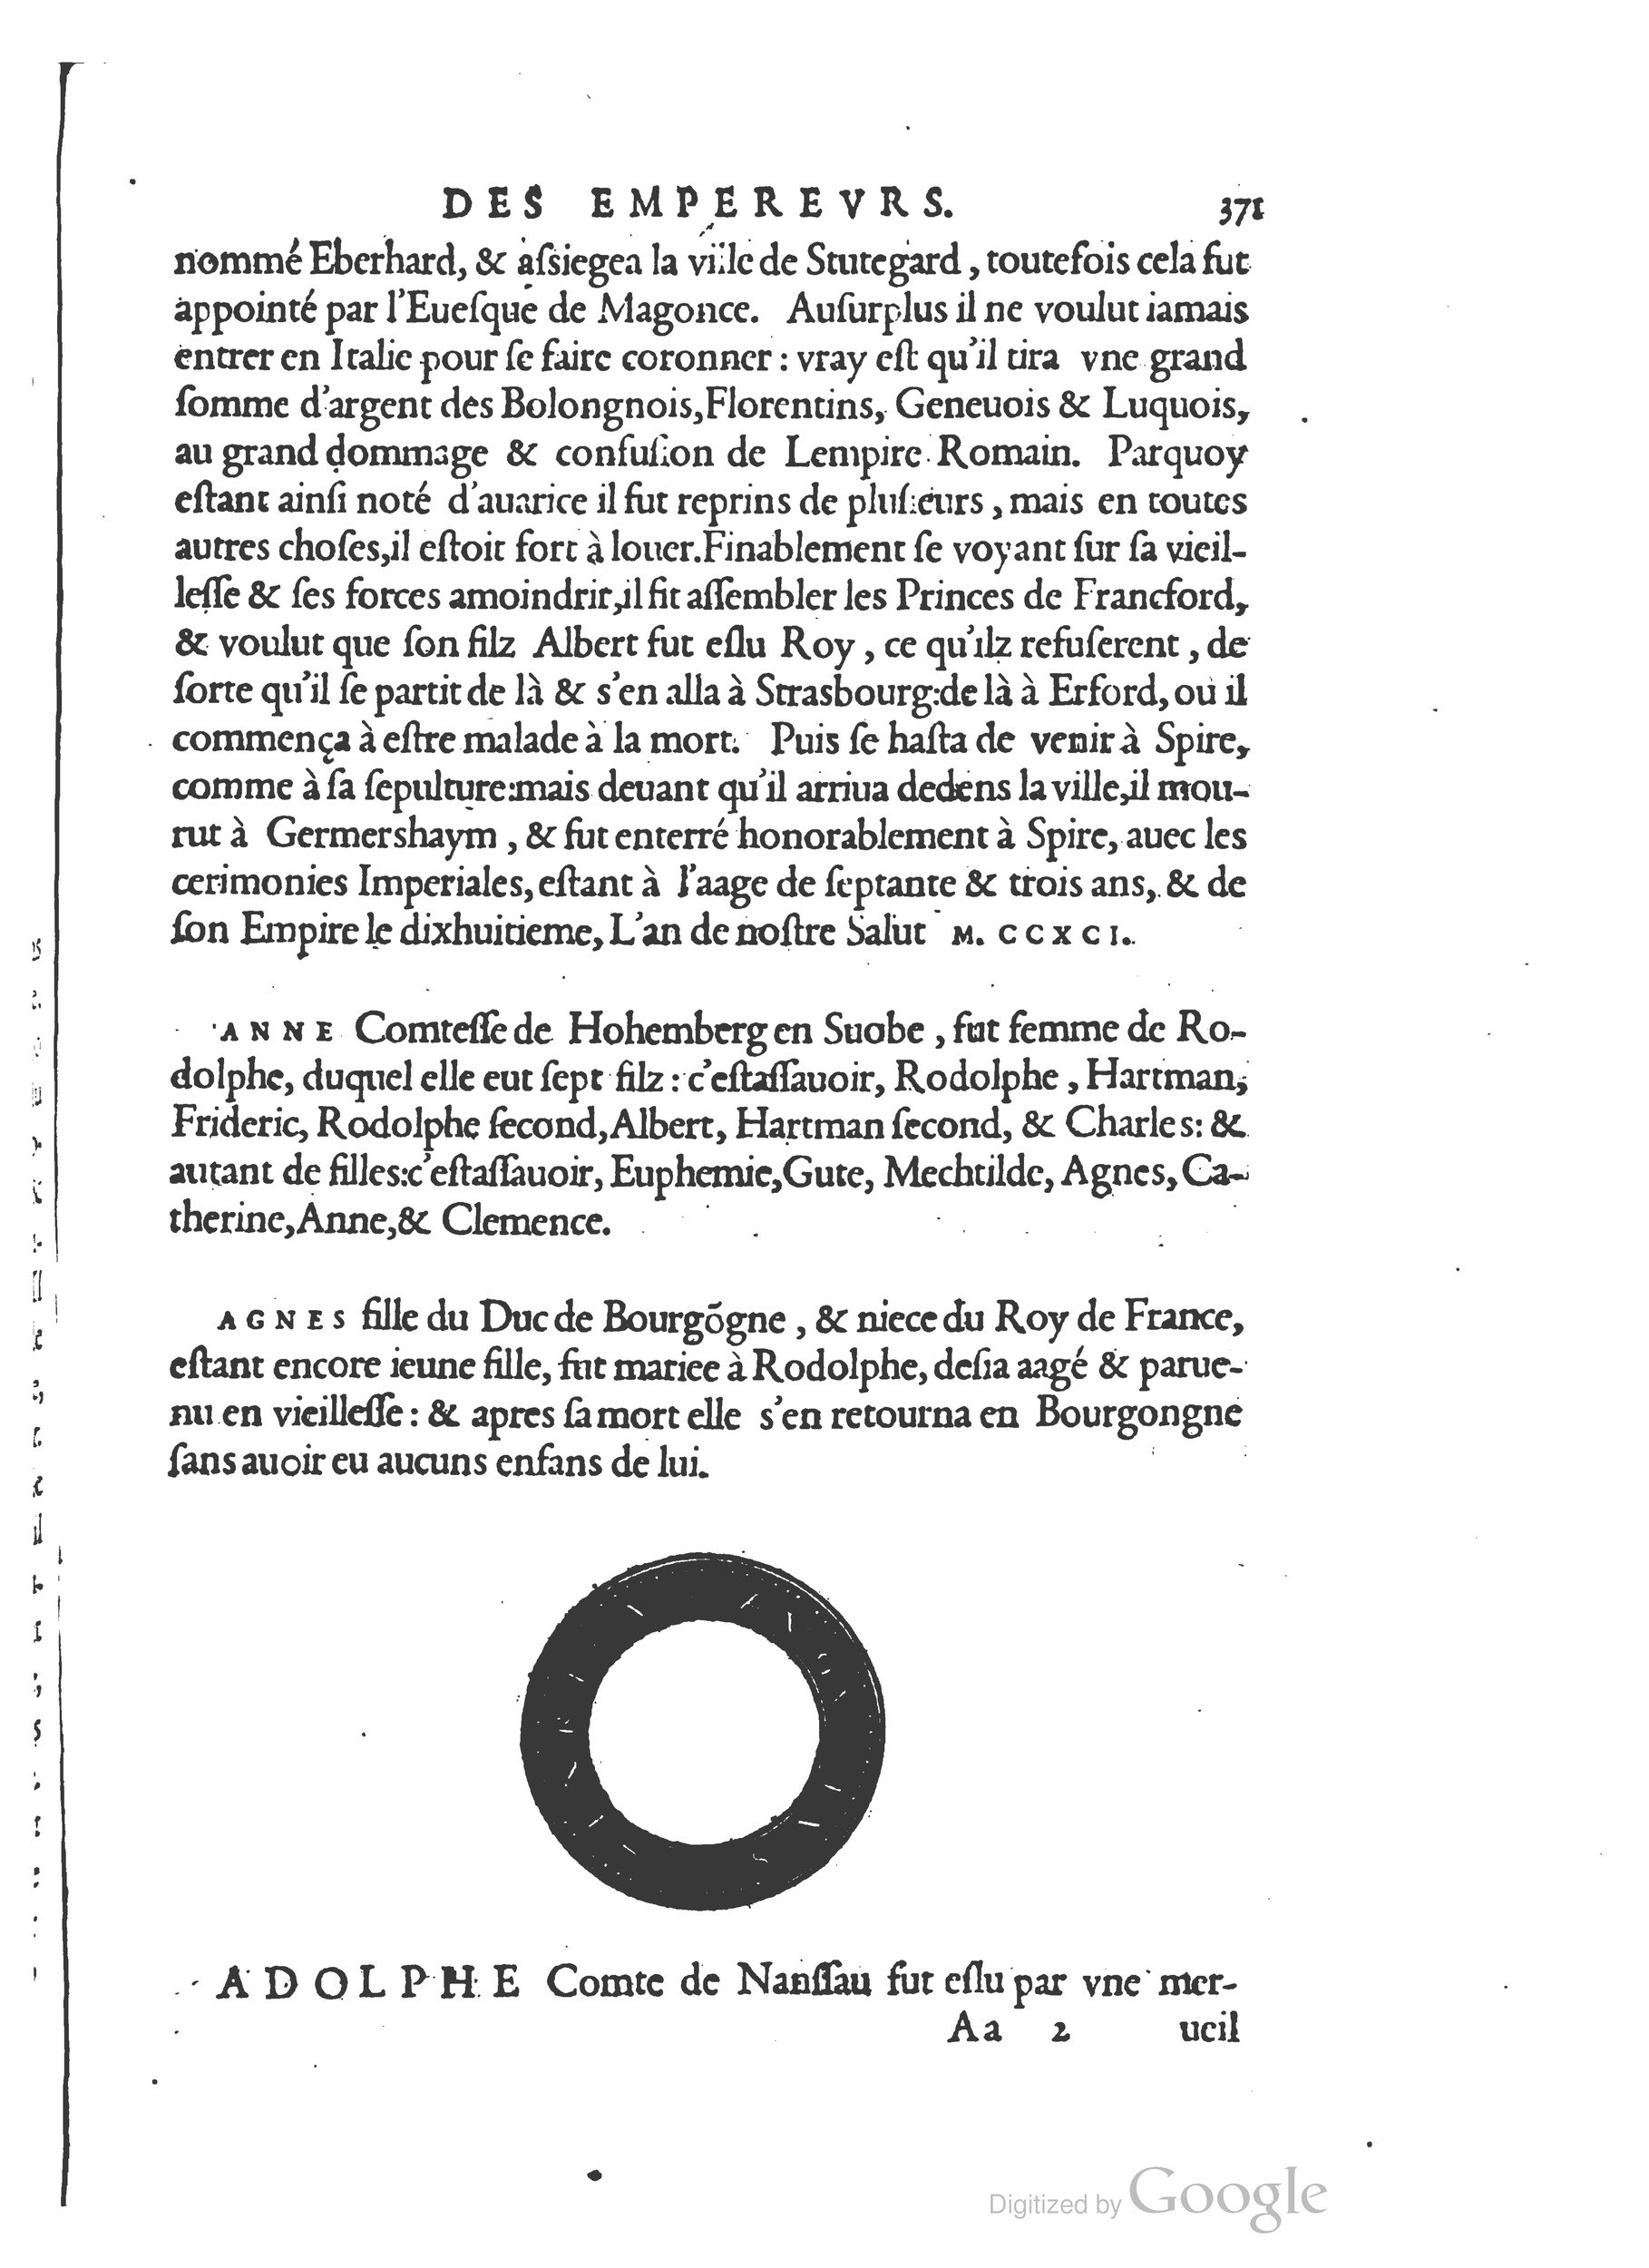 1553 Epitome du trésor des antiquités Strada Guérin_BM Lyon_Page_404.jpg